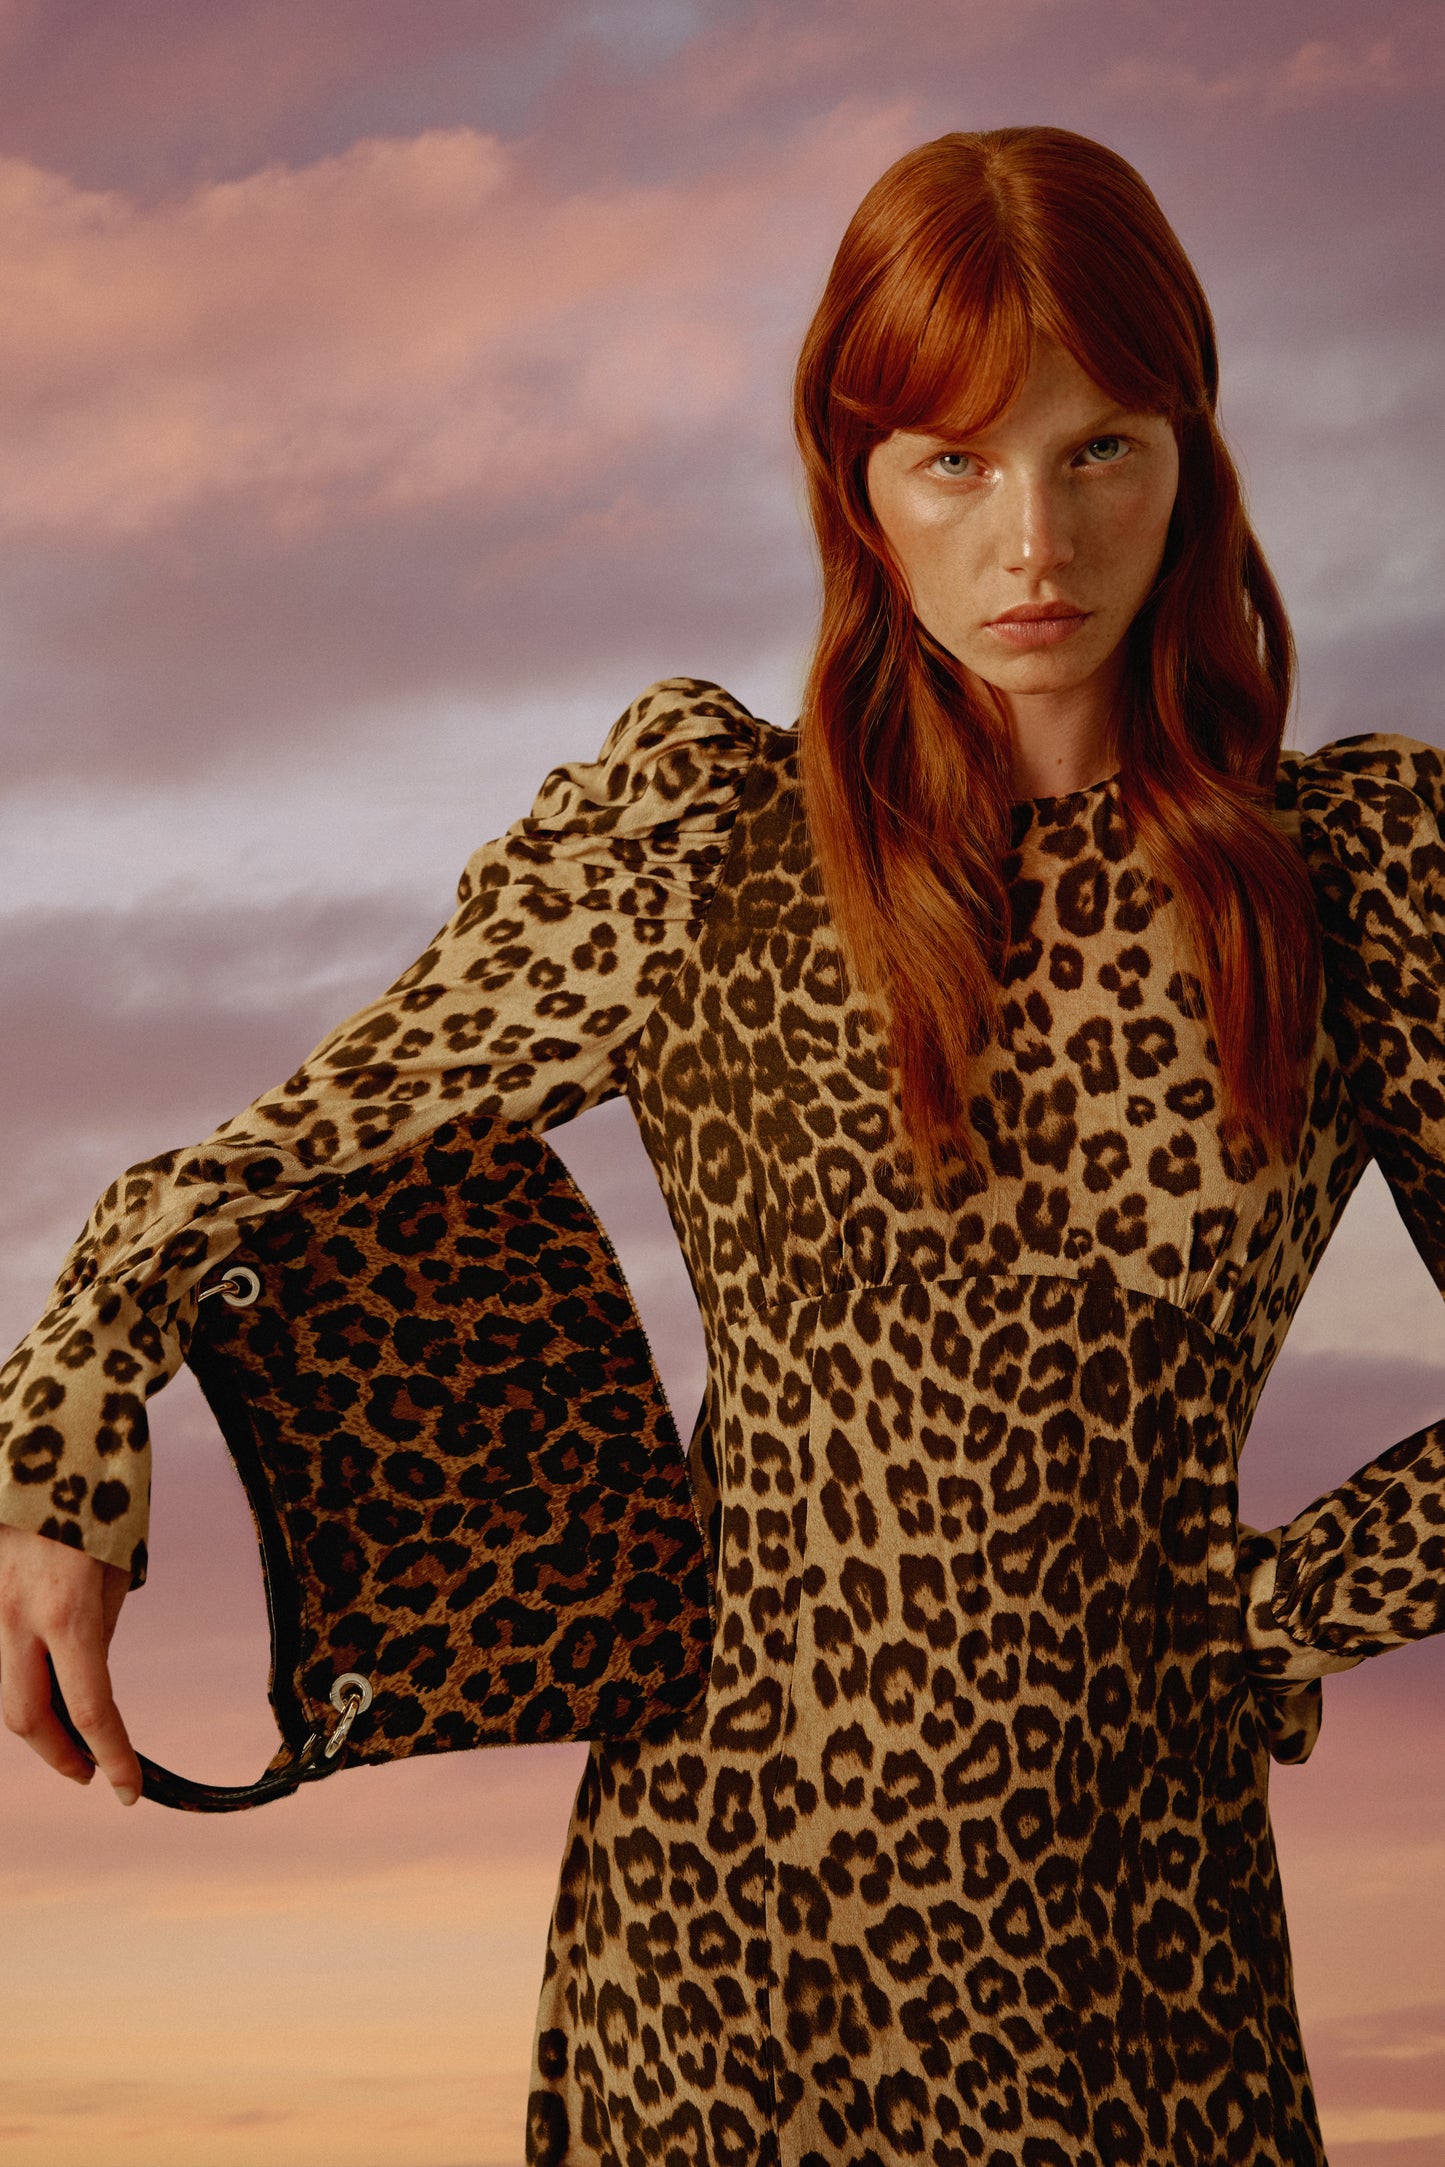 Chica pelirroja con un vestido de leopardo a juego con su bolso de mano